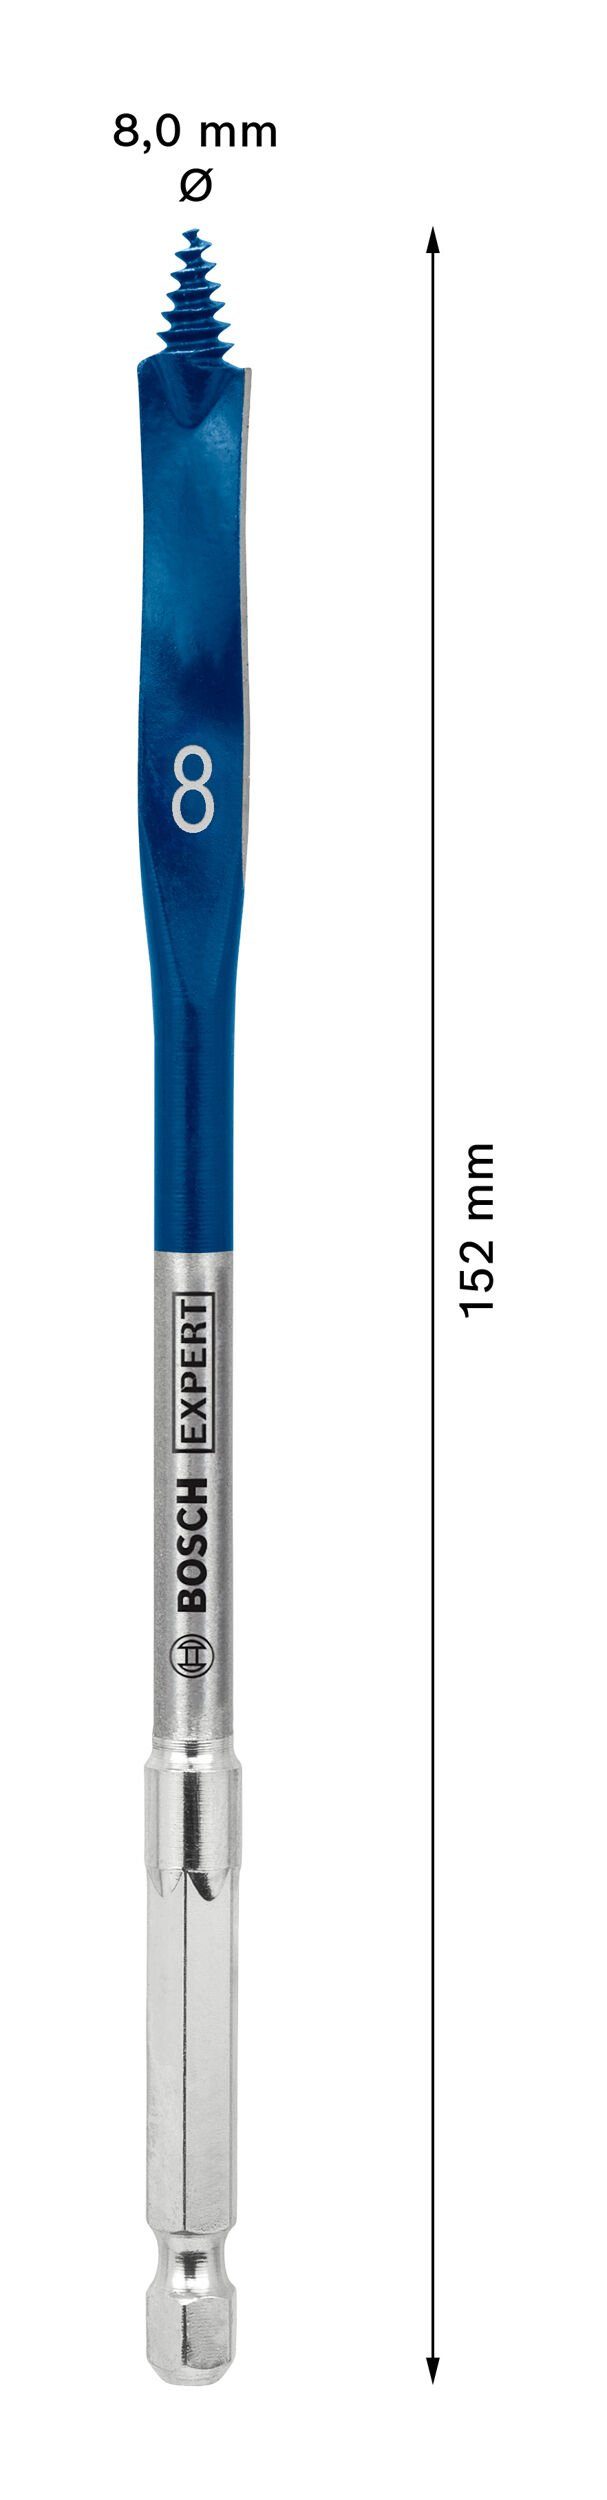 Accessories SelfCut - Expert 152 Speed, Flachfräsbohrer mm Holzbohrer Bosch 8 x Sechskant BOSCH